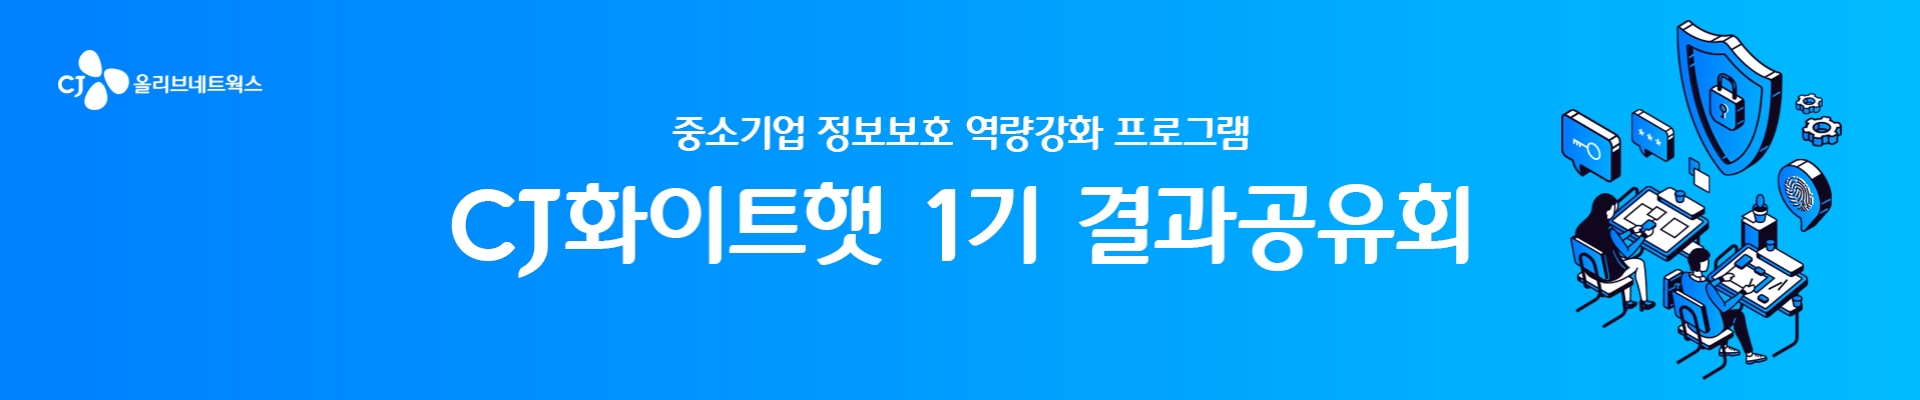 CJ화이트햇 1기 결과공유회 